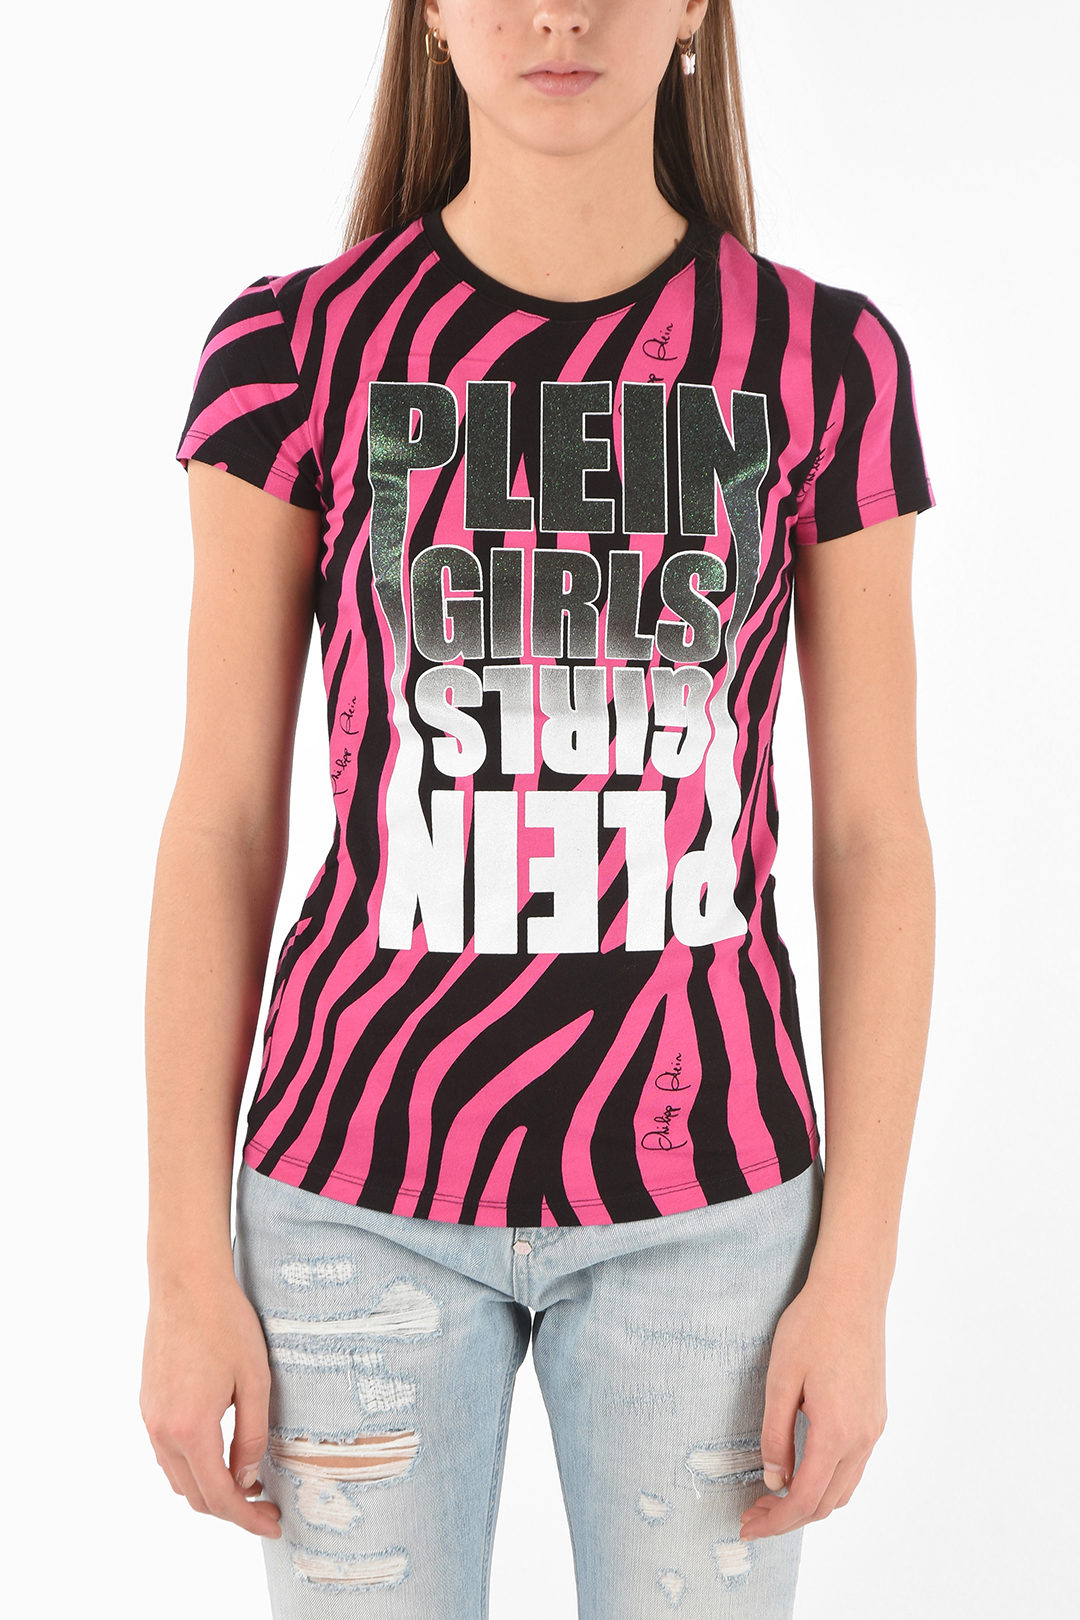 eetlust Tarief analyseren Philipp Plein Zebra PLEIN GIRLS T-Shirt women - Glamood Outlet